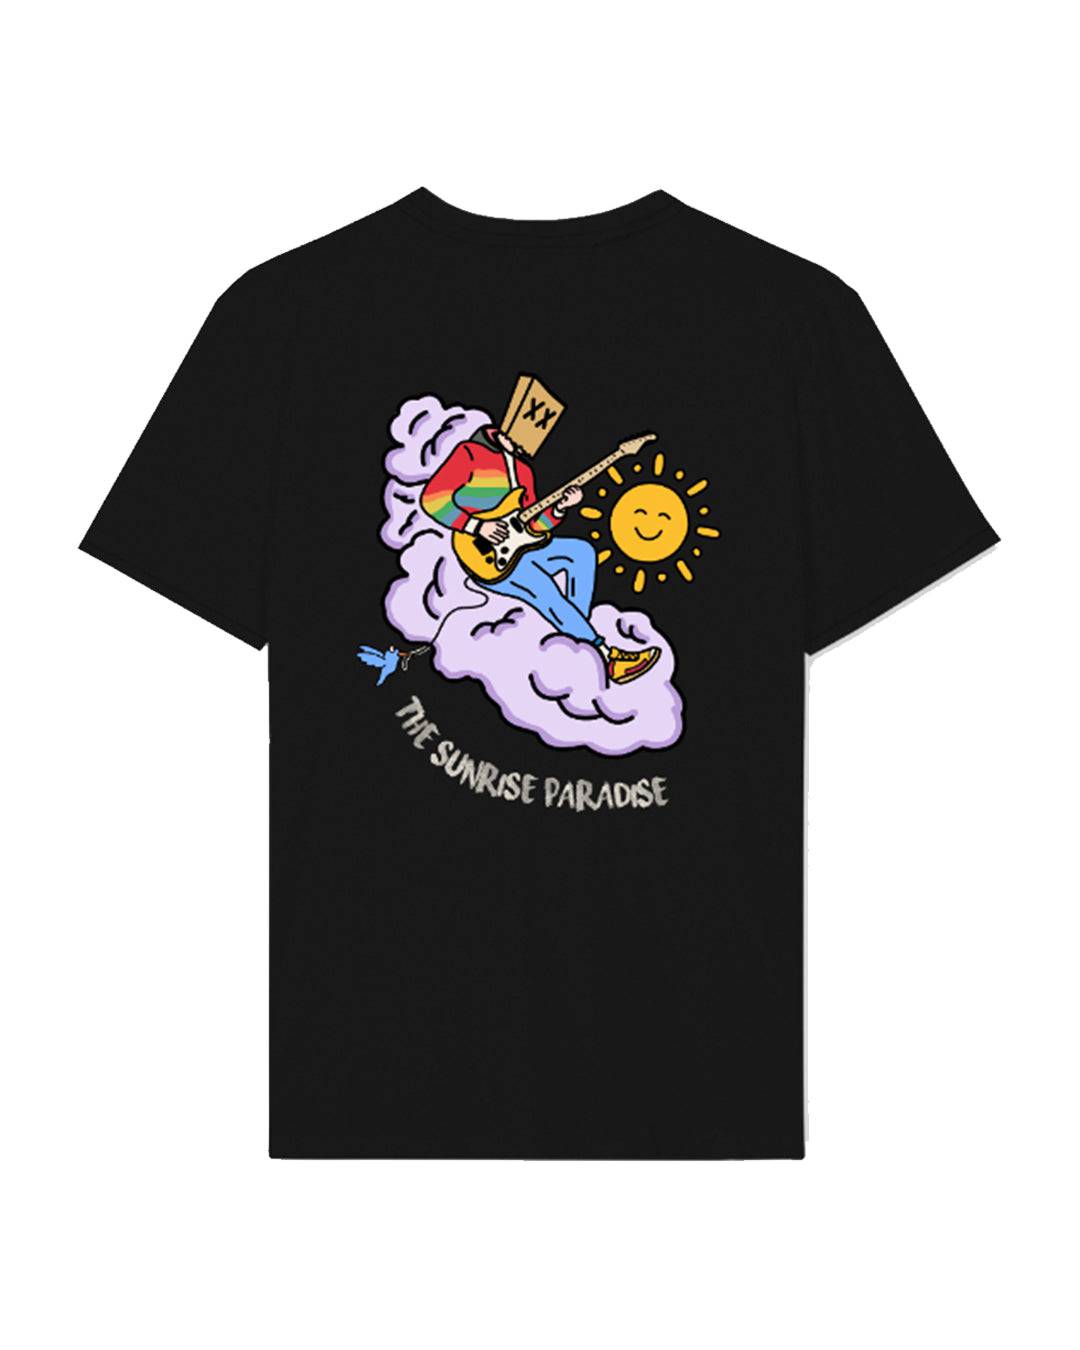 Dullboy x The Sunrise Paradise limited edition T-shirt - Dullboy